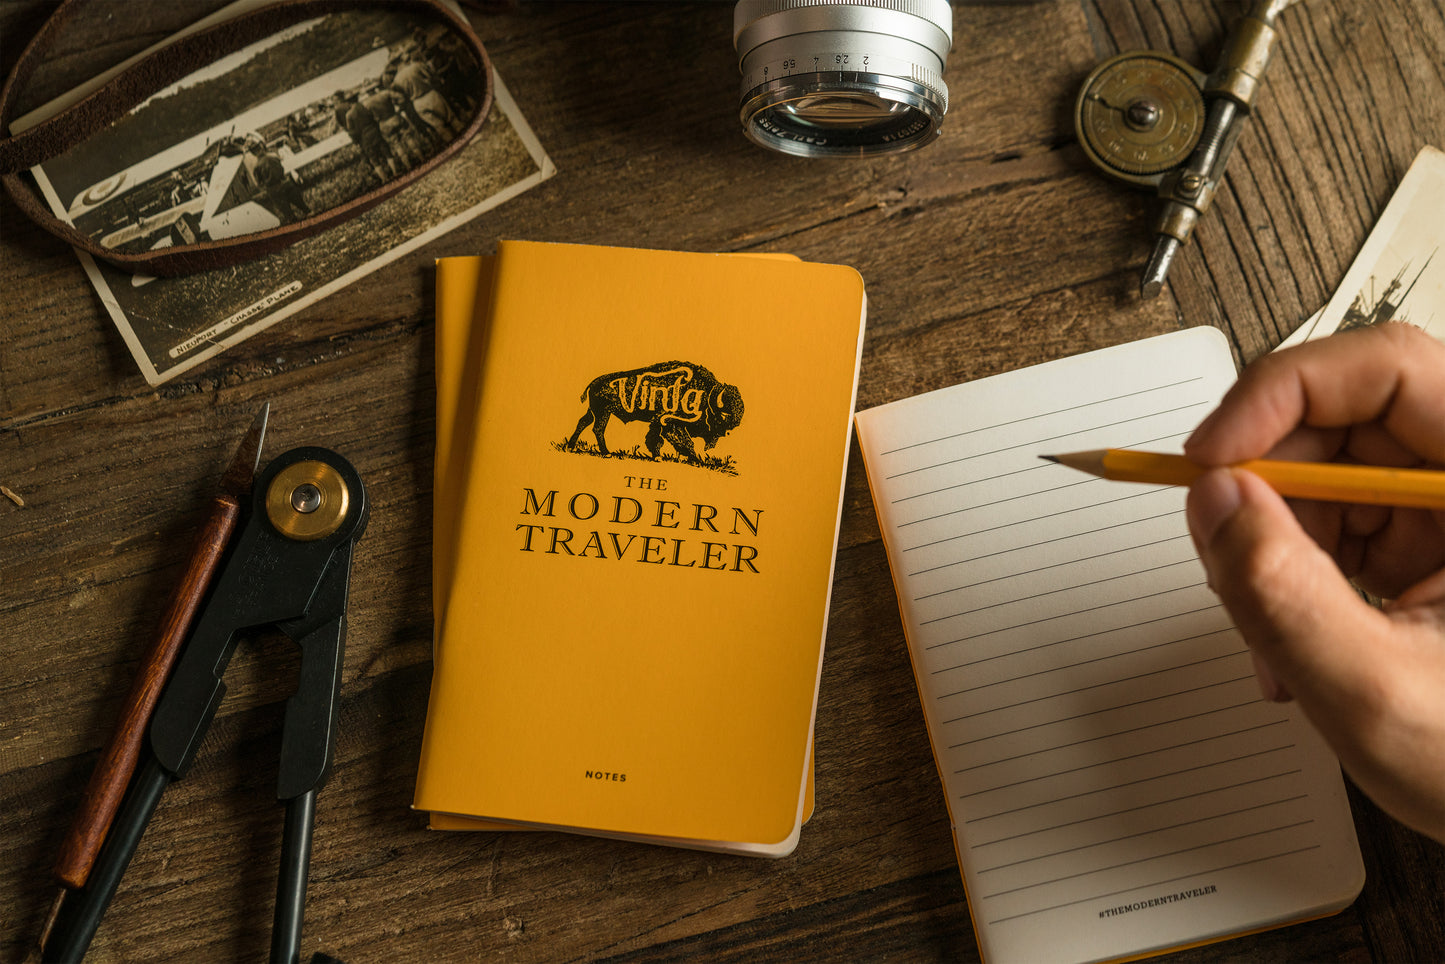 Modern Traveler Books (set of 3)